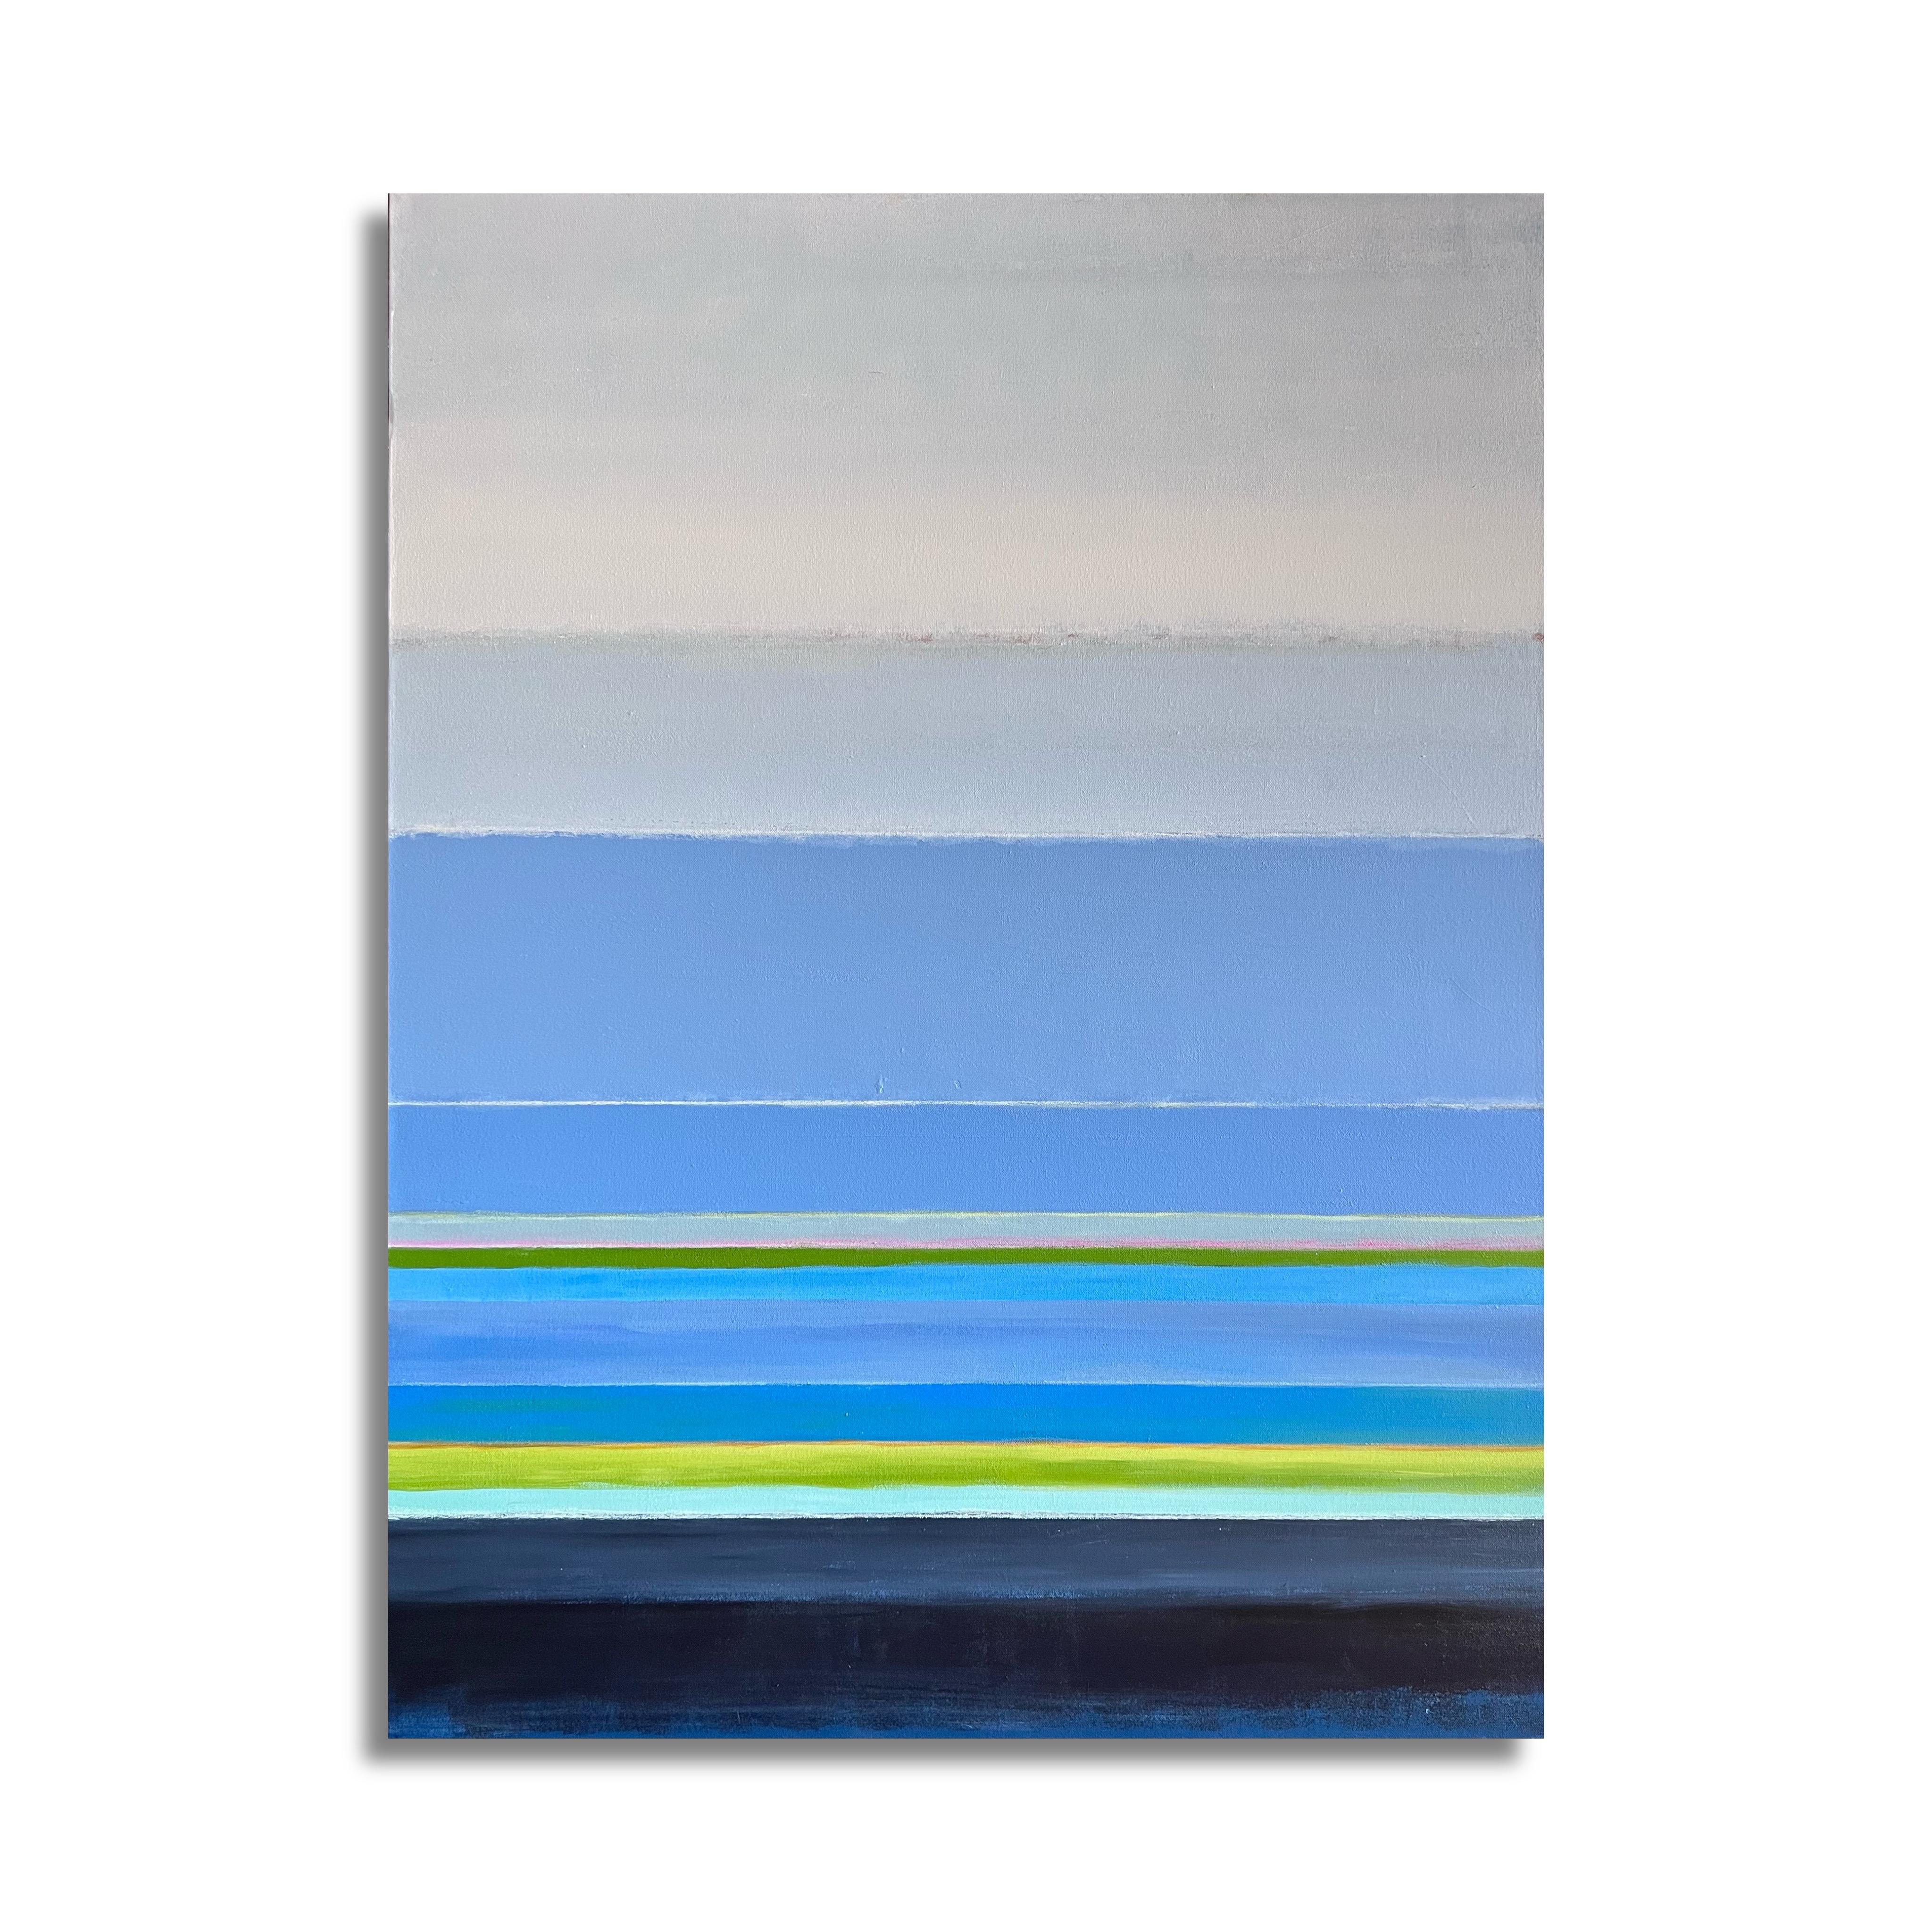 Of the Same Stripe (Abstrakt, Geometrisch, Muster, Wasserlandschaft, Himmelslandschaft, Blau) (Zeitgenössisch), Painting, von Kelley Carman